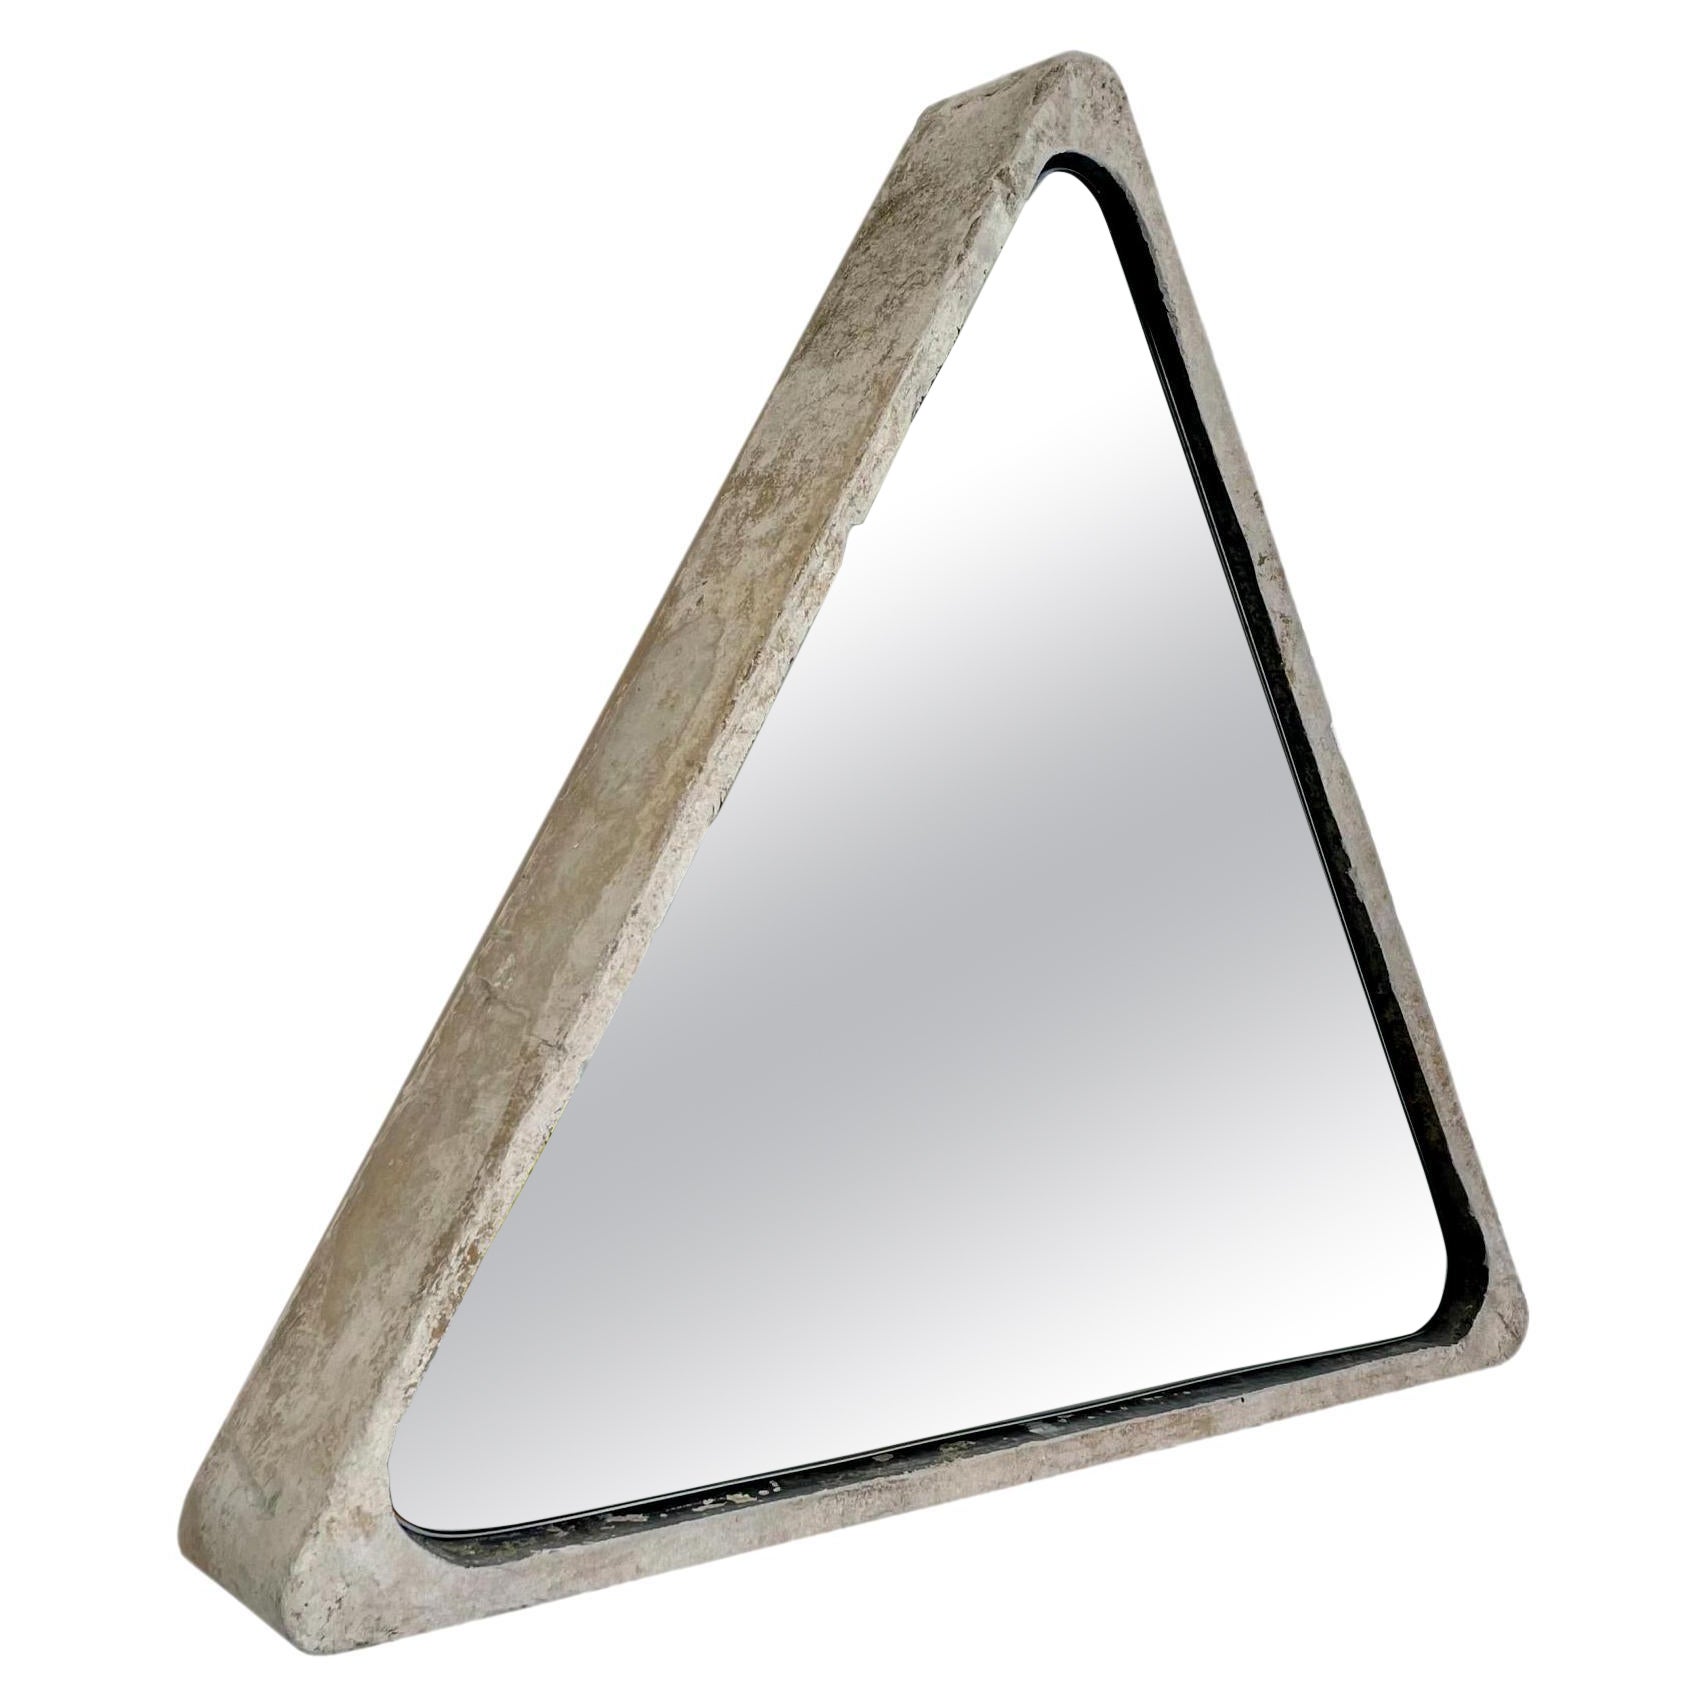 Triangular Willy Guhl Concrete Mirror, 1960s Switzerland